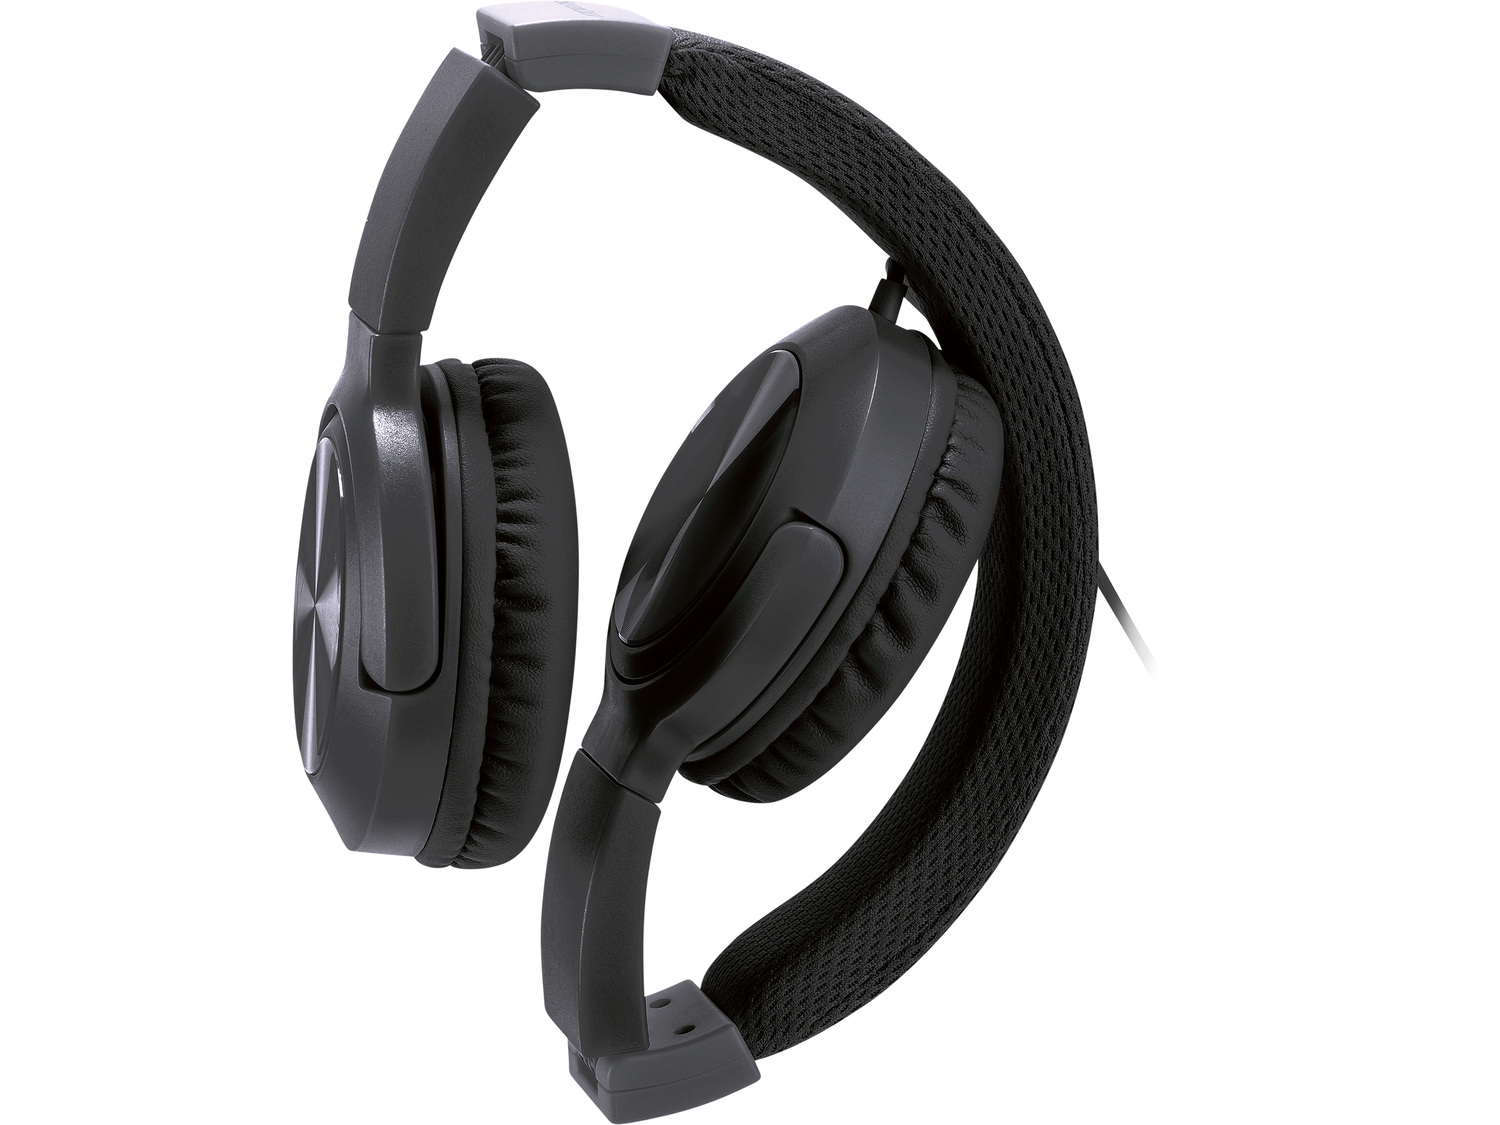 Słuchawki Silvercrest, cena 29,99 PLN 
4 wzory 
- możliwość składania i regulacji
- ...